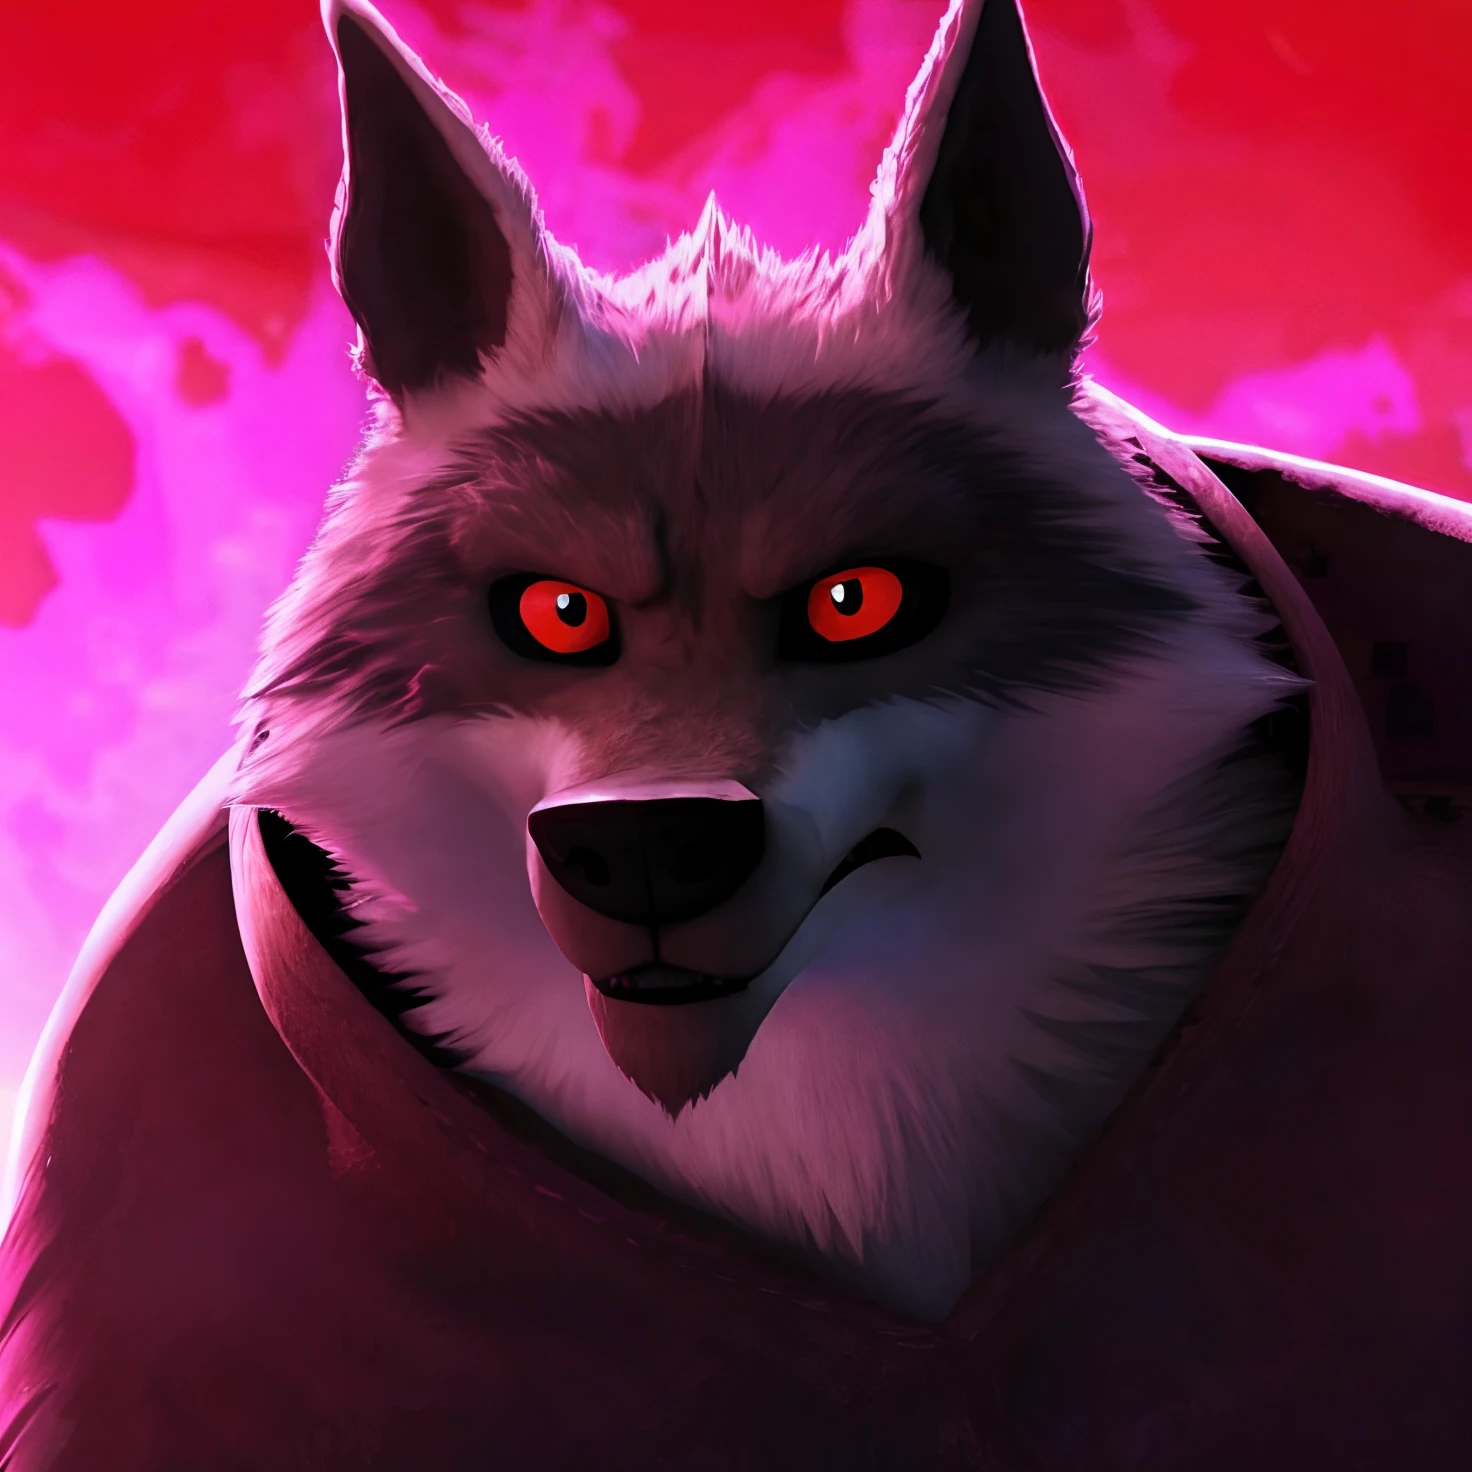 Death Wolf เขาไม่ชอบความคิดเห็นของคุณ ตอนนี้เขาหมดความอดทนและโกรธอีกครั้ง